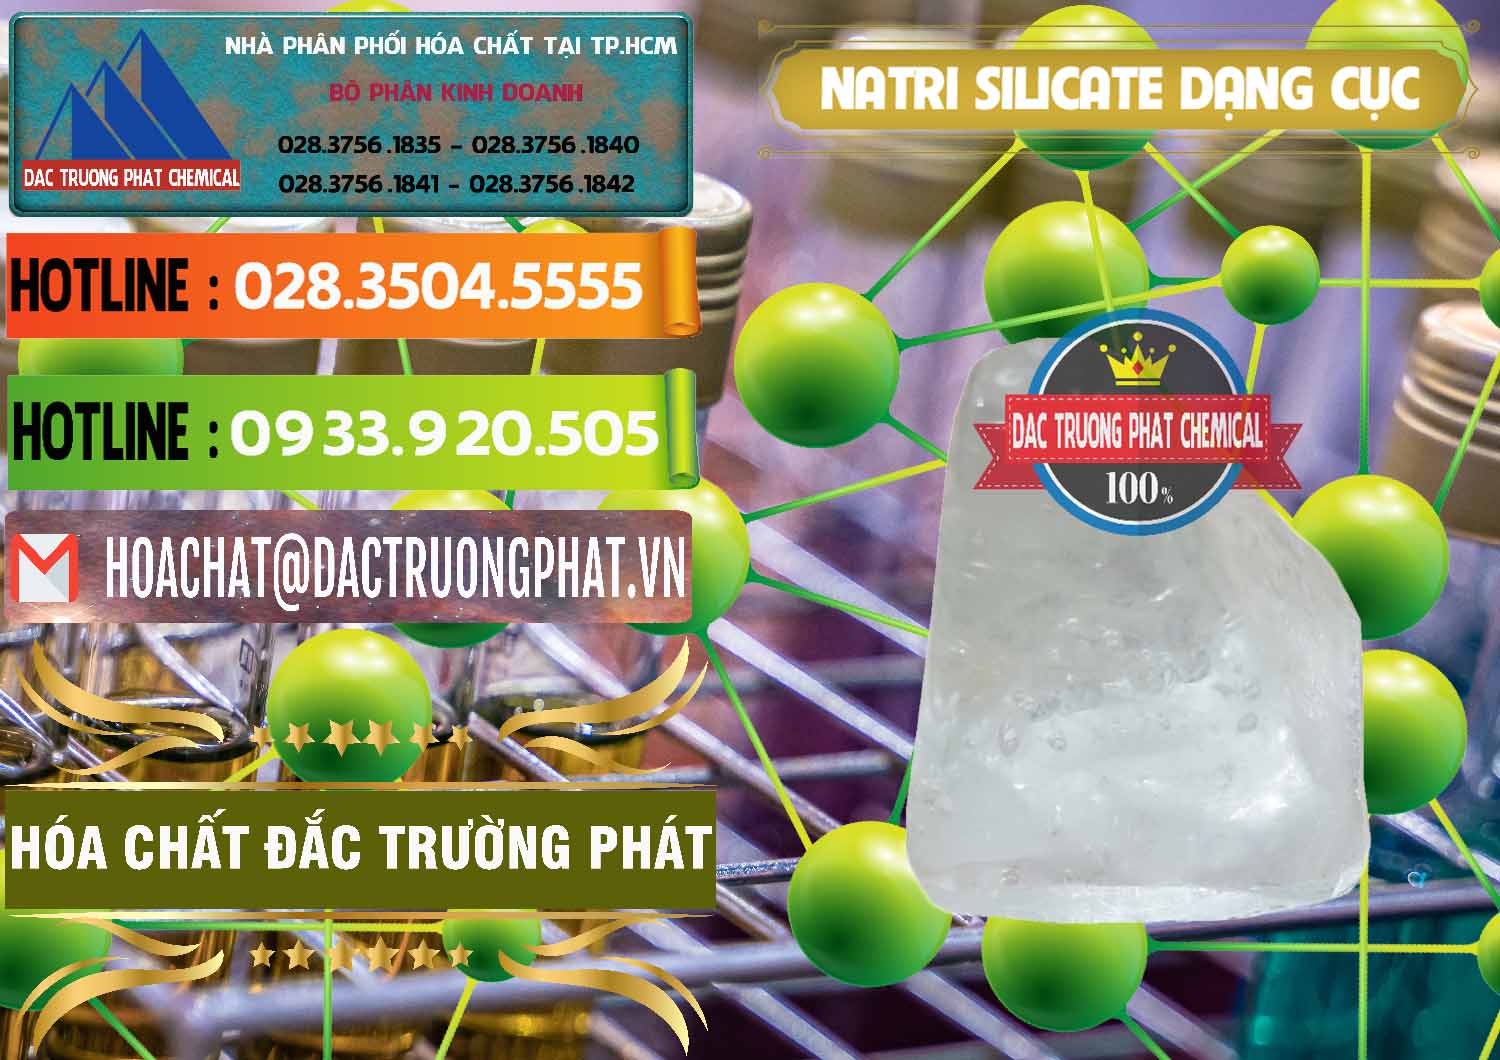 Nơi chuyên kinh doanh & bán Natri Silicate - Na2SiO3 - Keo Silicate Dạng Cục Ấn Độ India - 0382 - Cty cung cấp ( nhập khẩu ) hóa chất tại TP.HCM - cungcaphoachat.com.vn